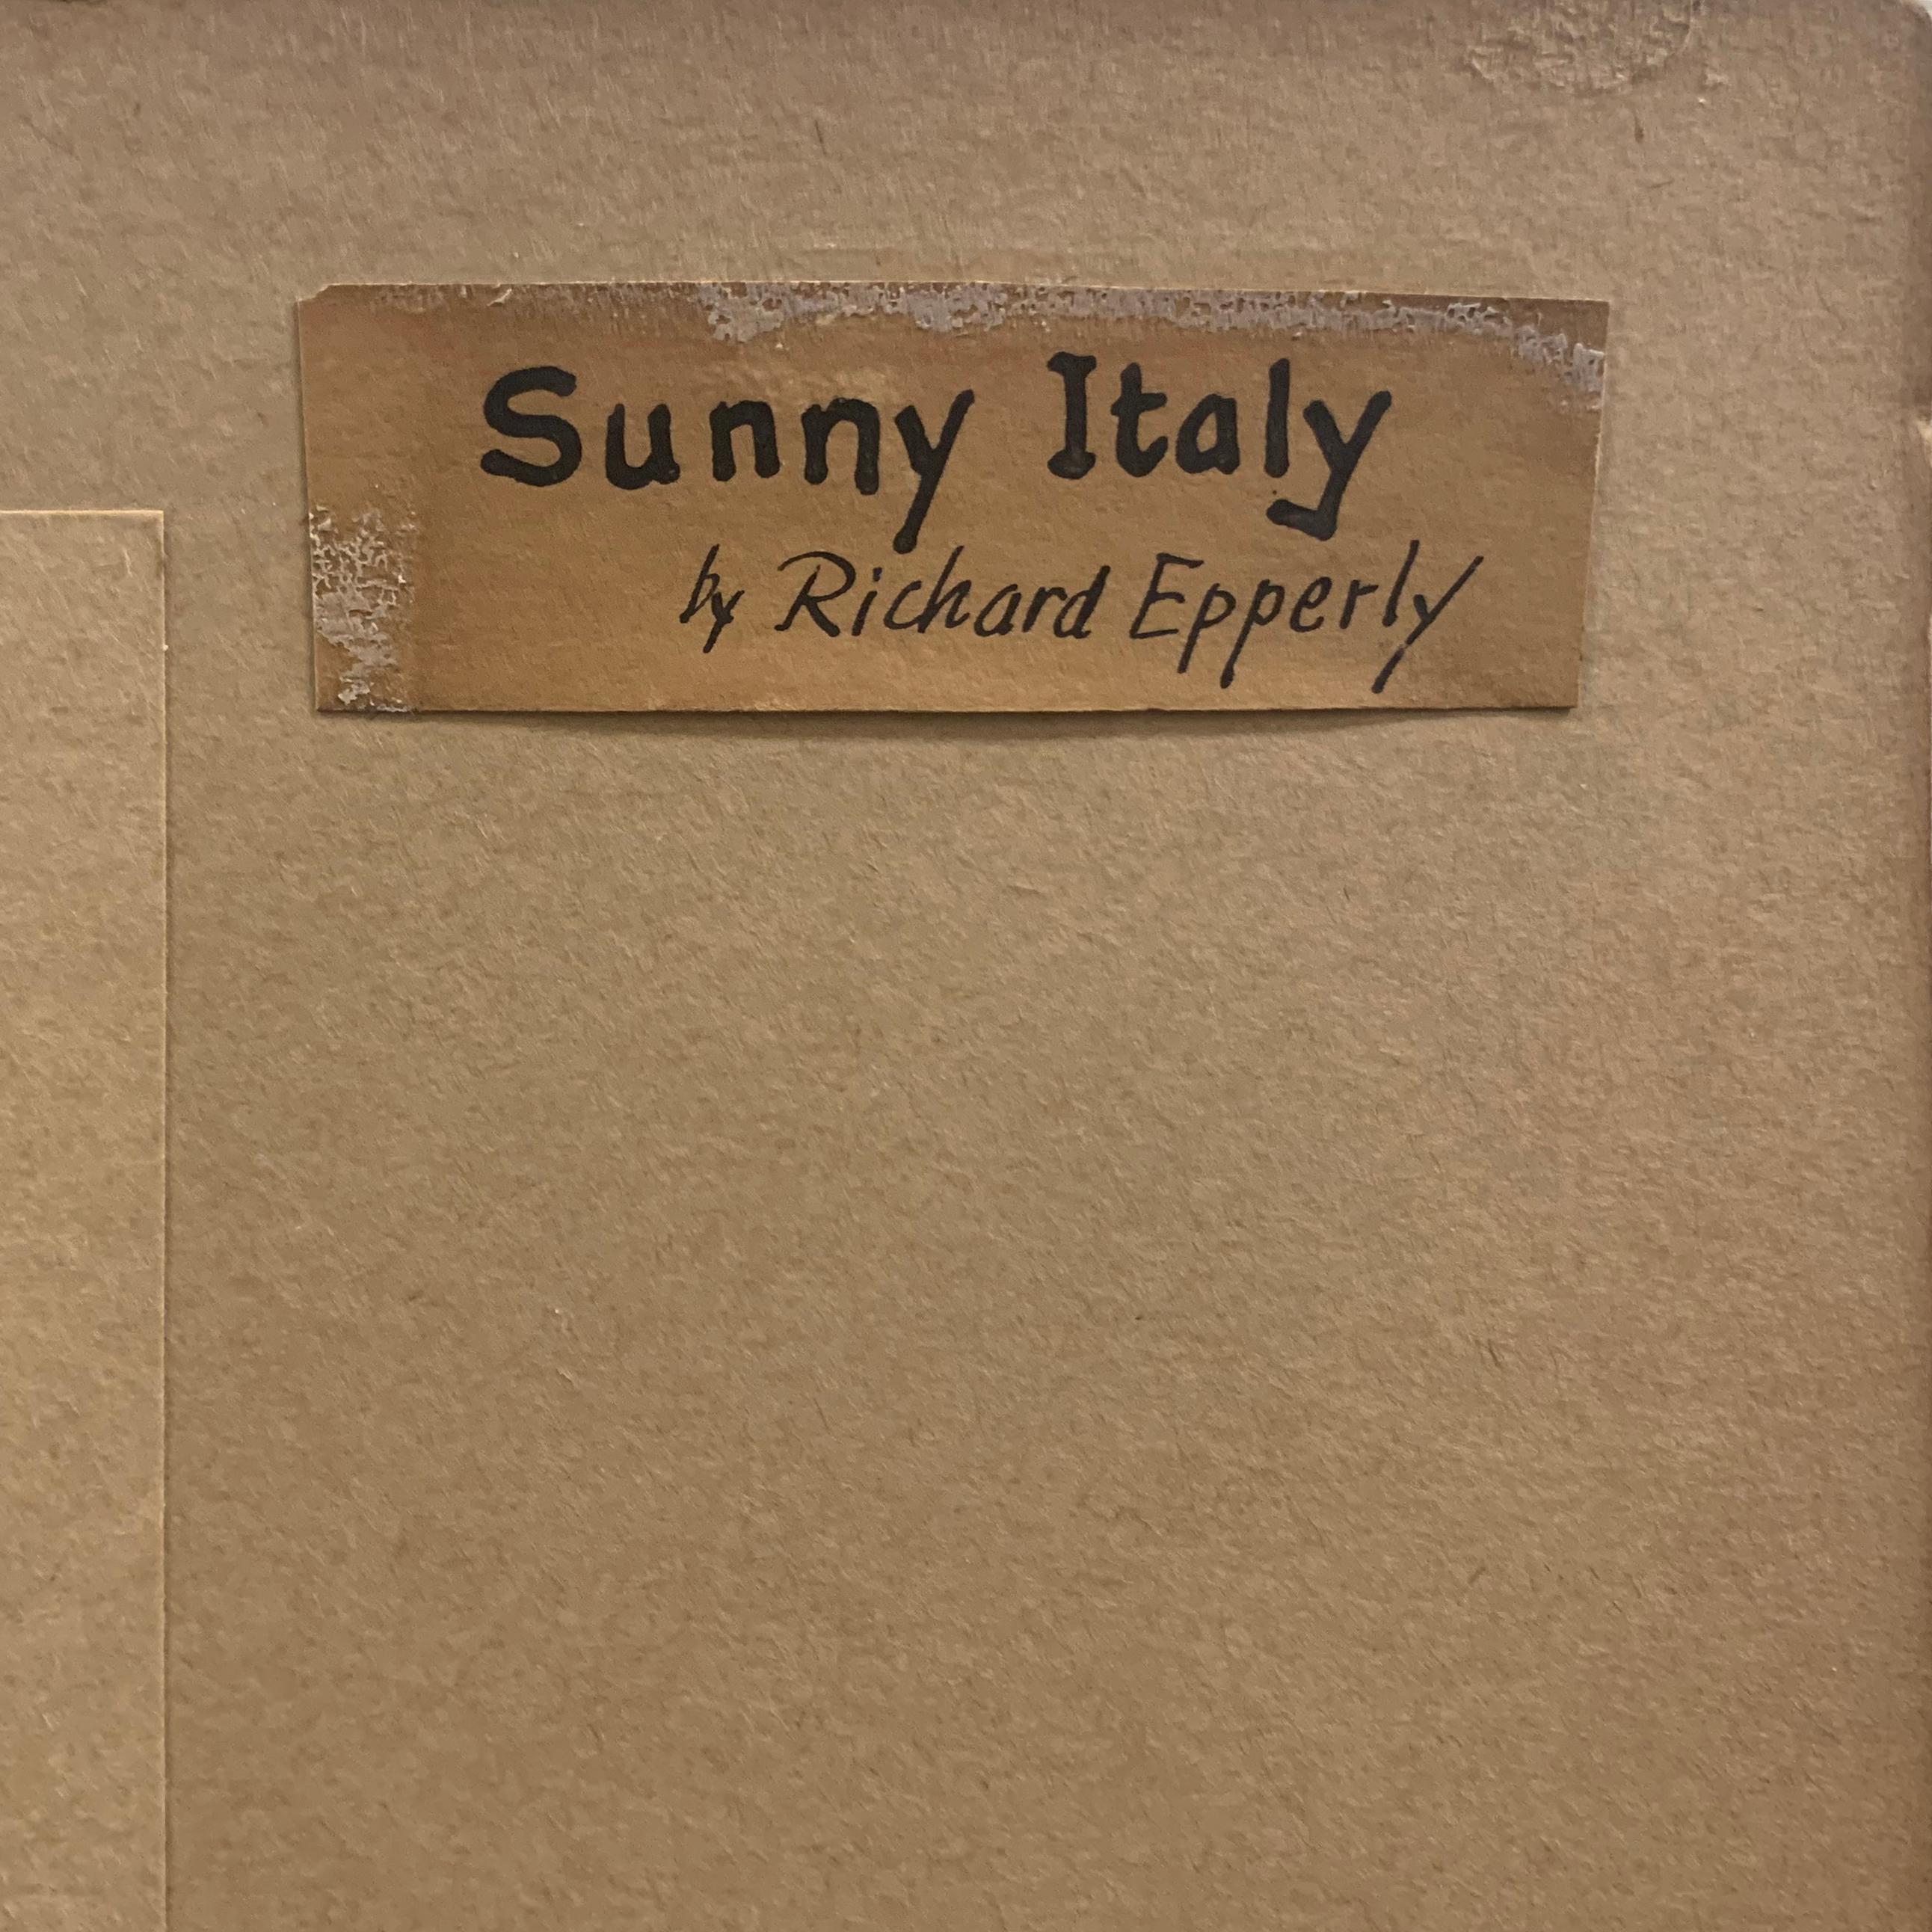 'Sicily', Paris, Art Institute of Chicago, Smithsonian Institute, Sunny Italy 5